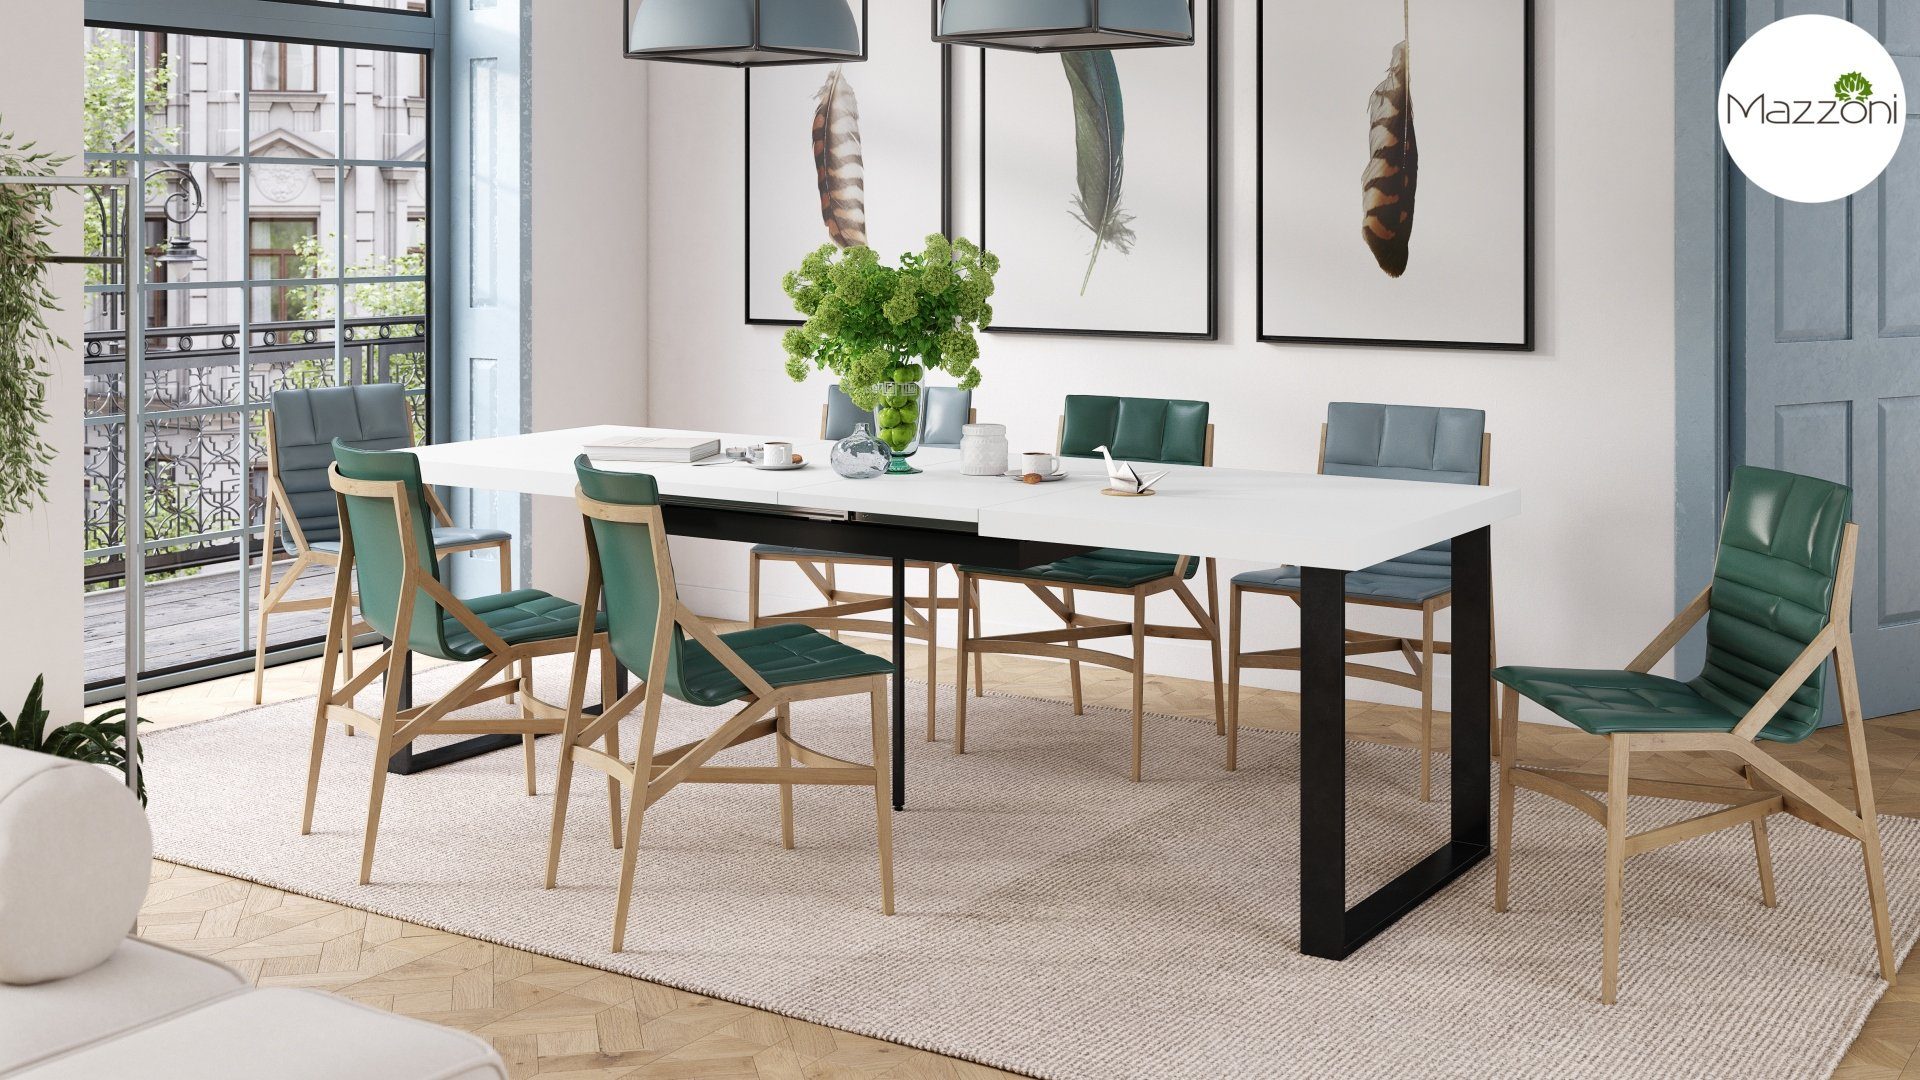 Mazzoni Esstisch Design Esstisch Avella - matt 310 160 Tisch ausziehbar bis matt cm Schwarz Weiß